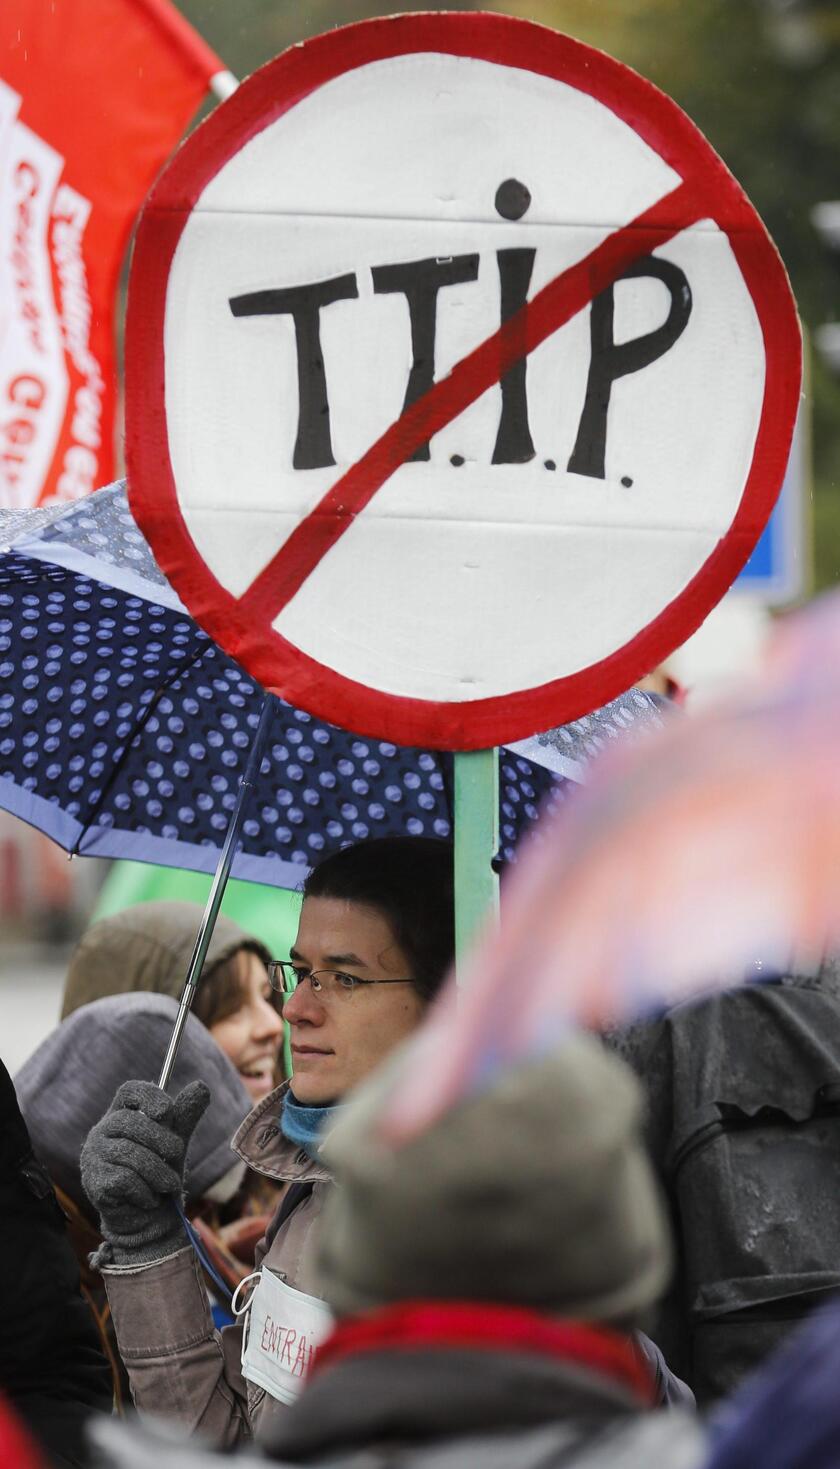 Corteo anti TTIP e austerità a Bruxelles © ANSA/EPA